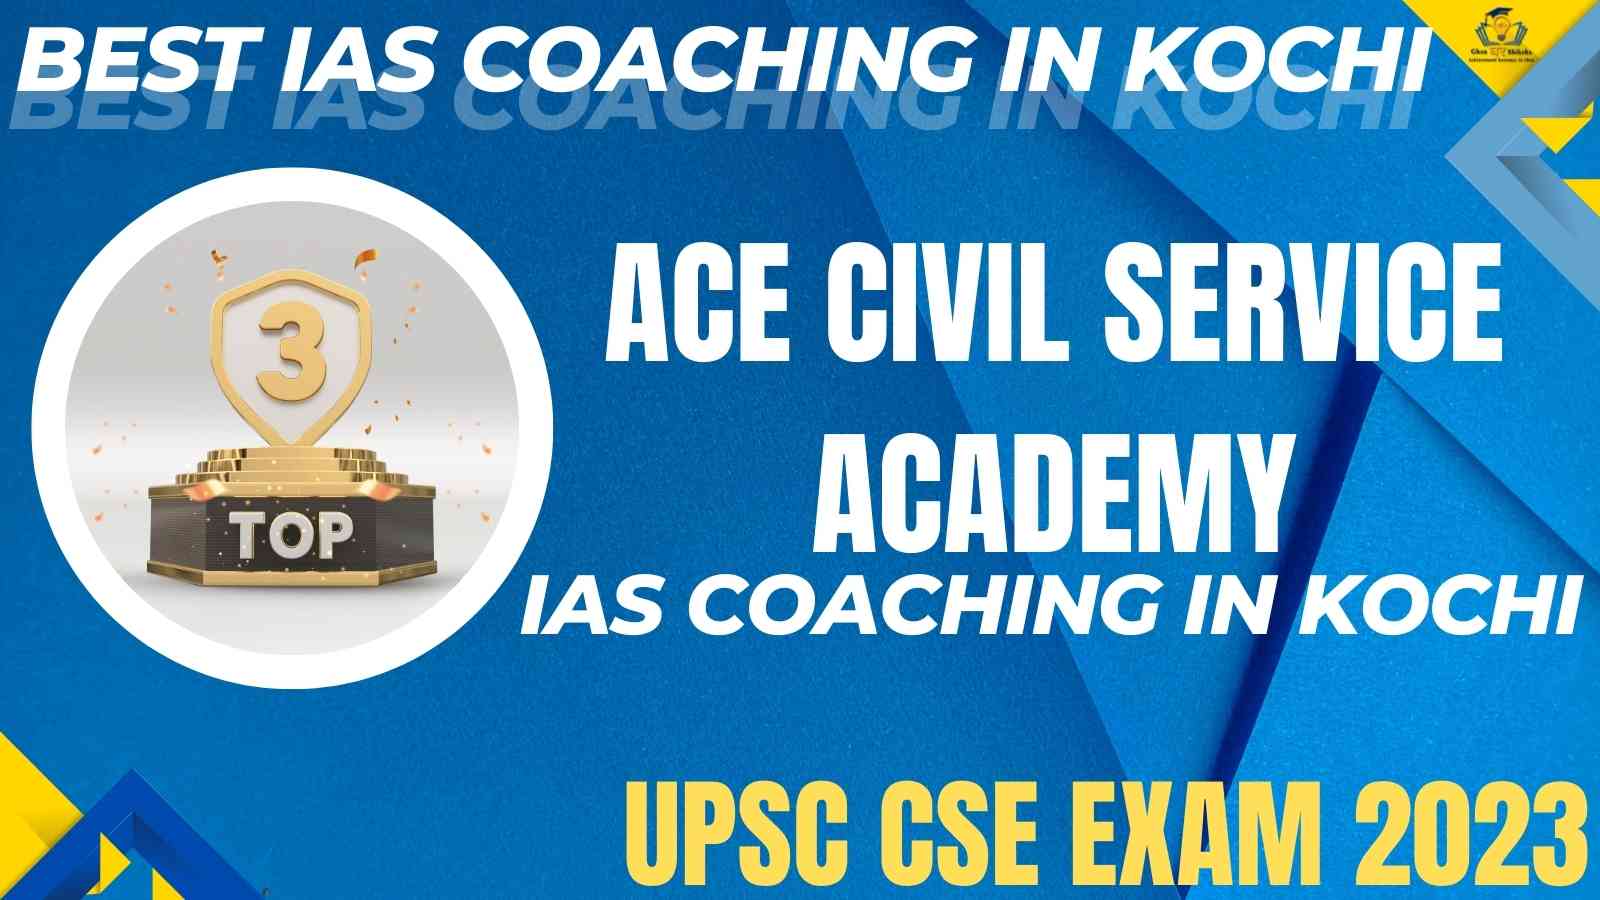 Top IAS Coaching In Kochi